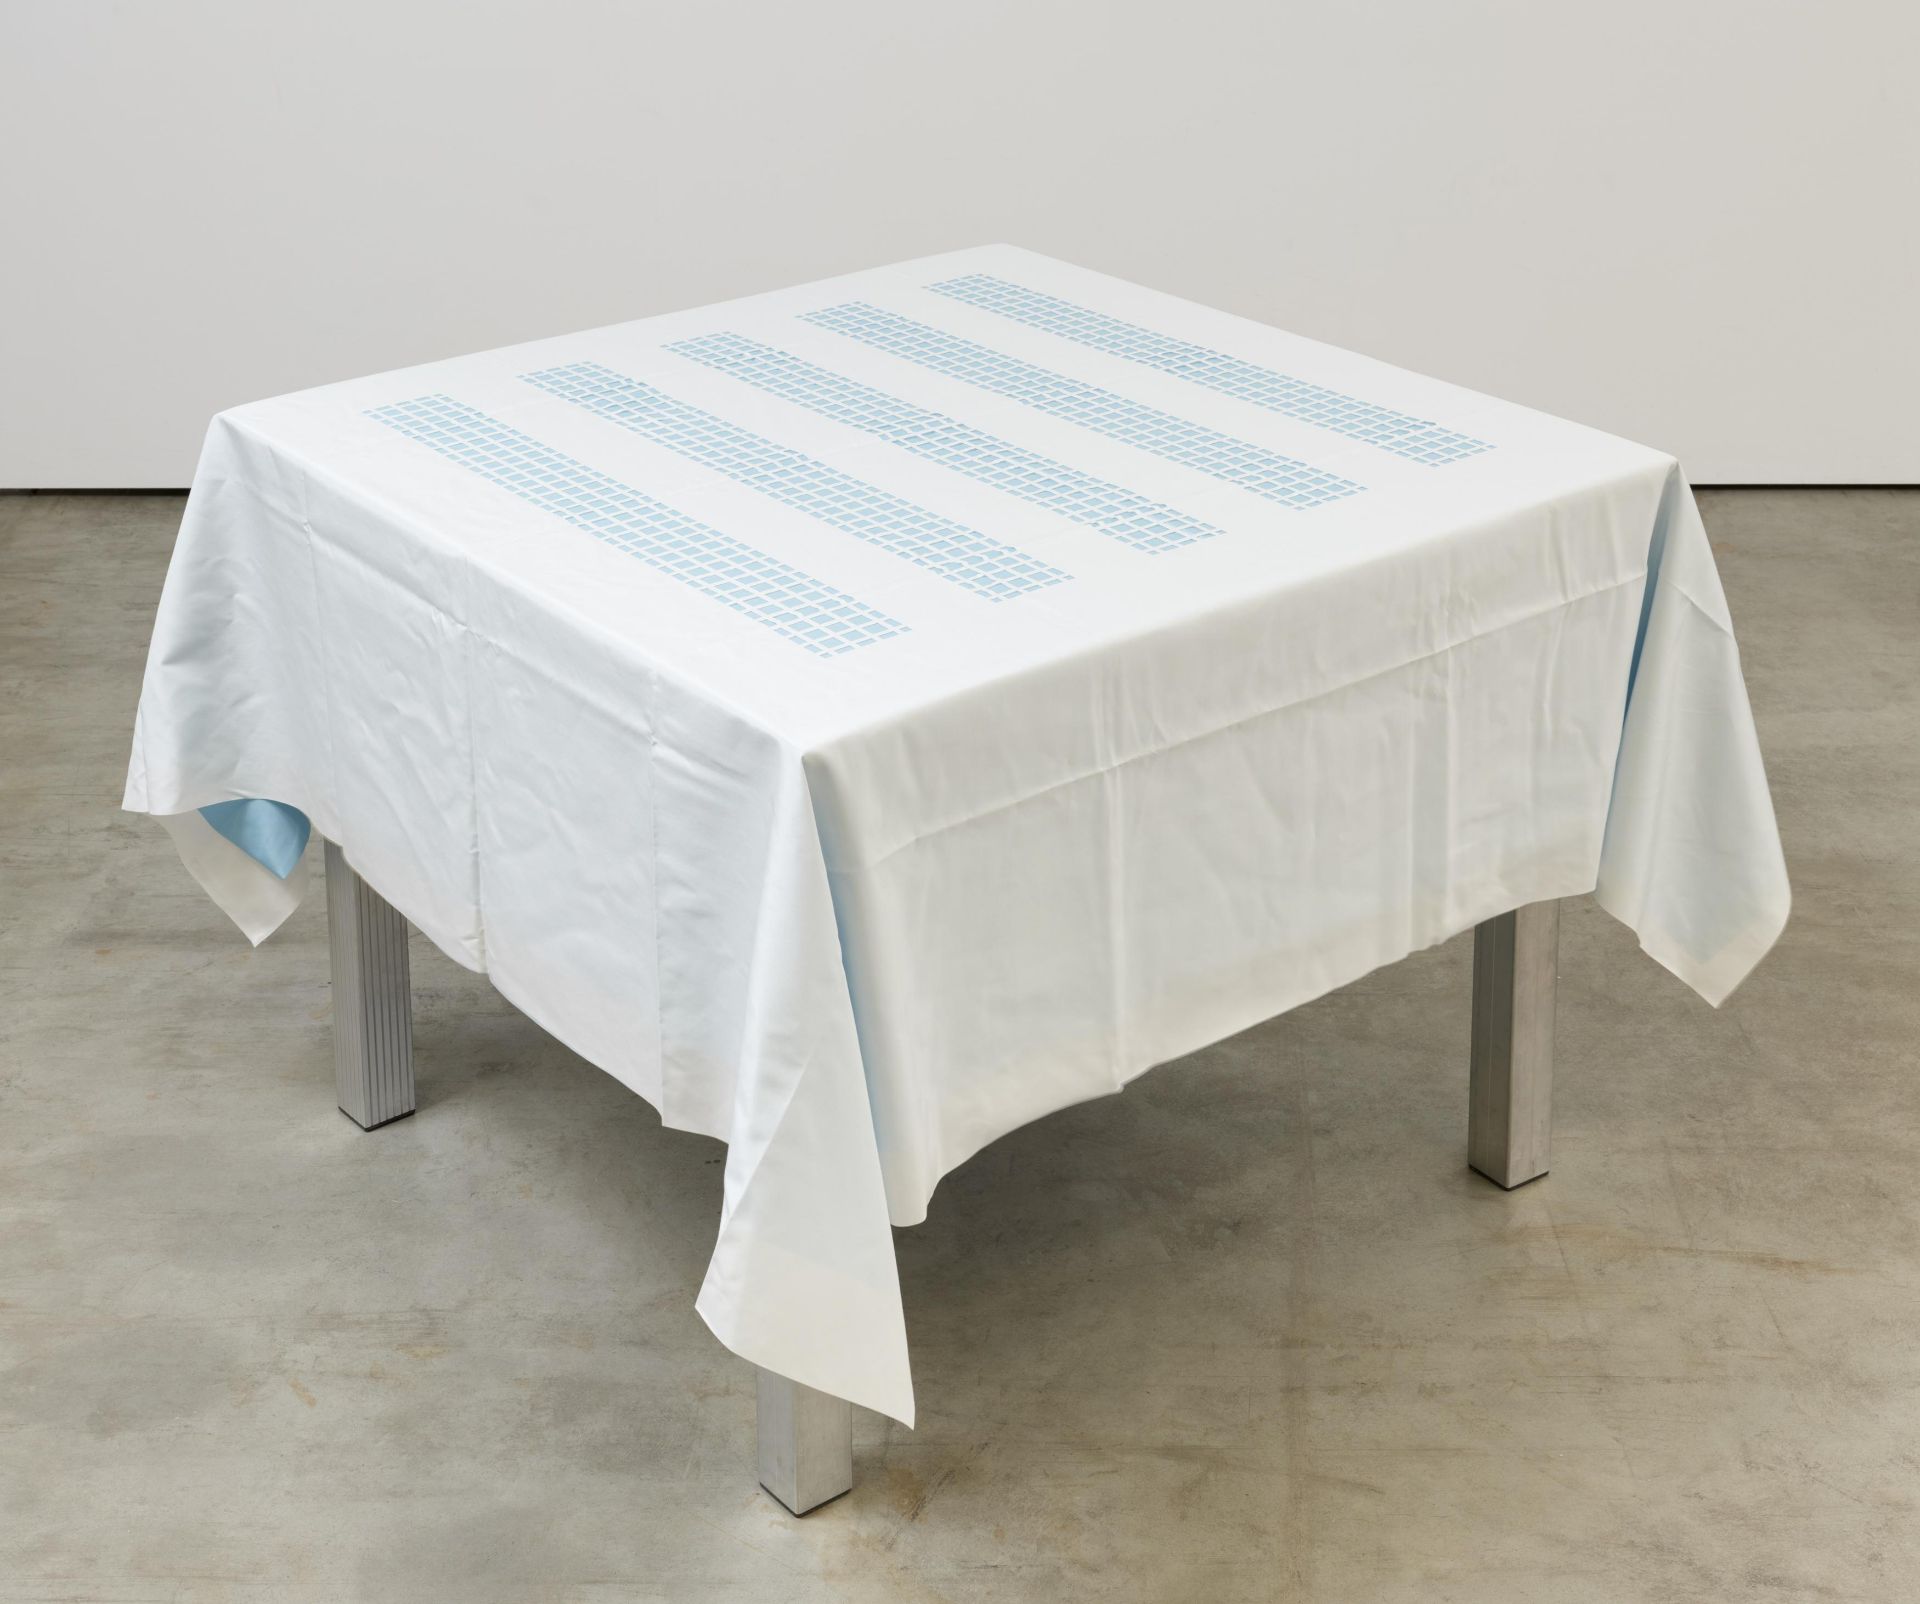 Daniel Buren: Unique Tablecloth with Laser-Cut Lace (für Parkett 66)